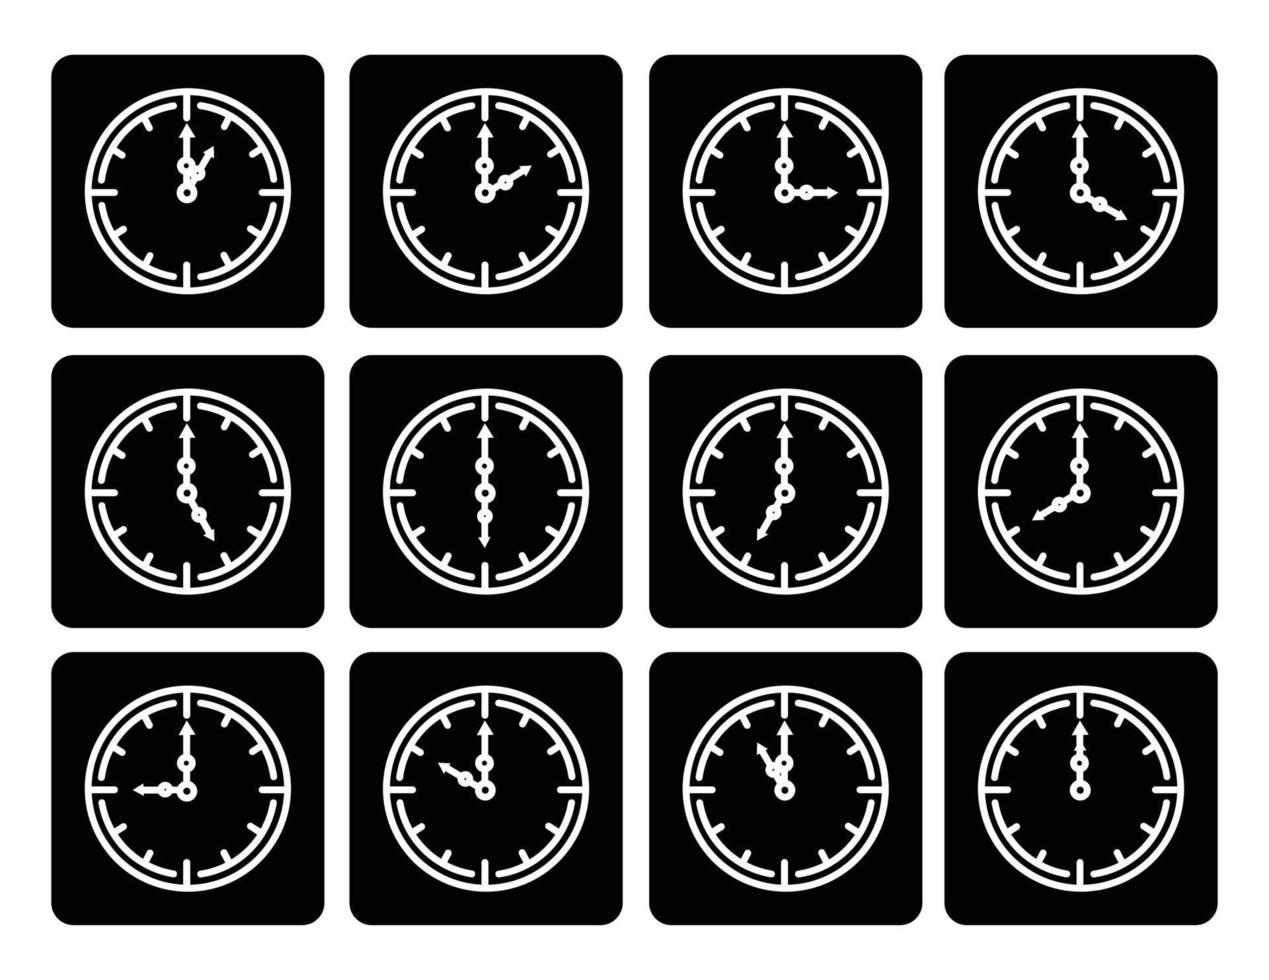 Stechuhr-Liniensymbole Alarm und Smartwatch-Zeit 24-Stunden-Uhr vektor